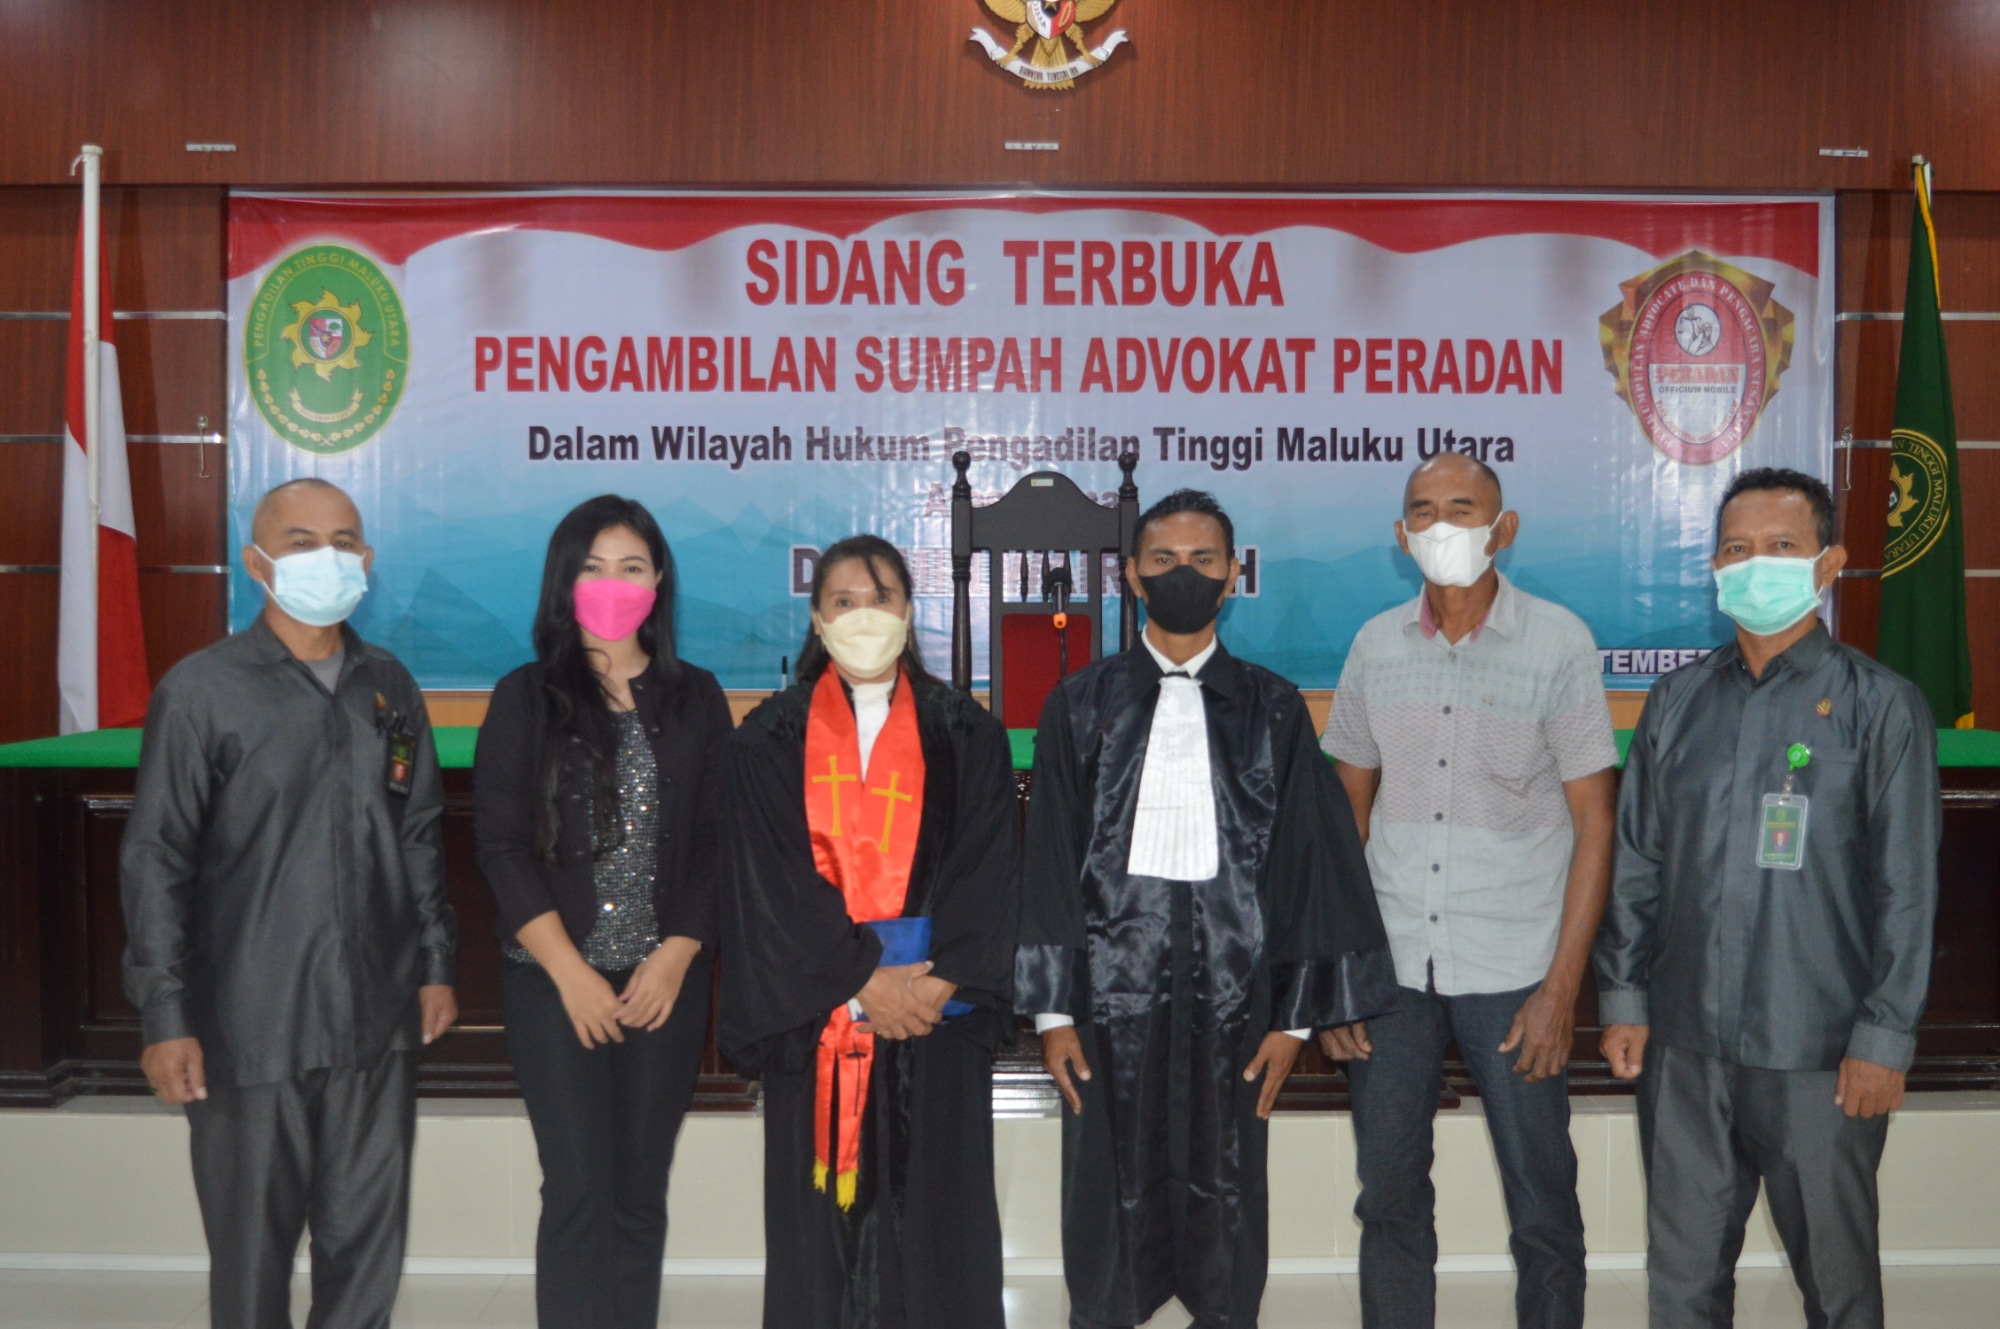 Pengambilan Sumpah Advokat dari Perkumpulan Advokat dan Pengacara Nusantara (PERADAN) 